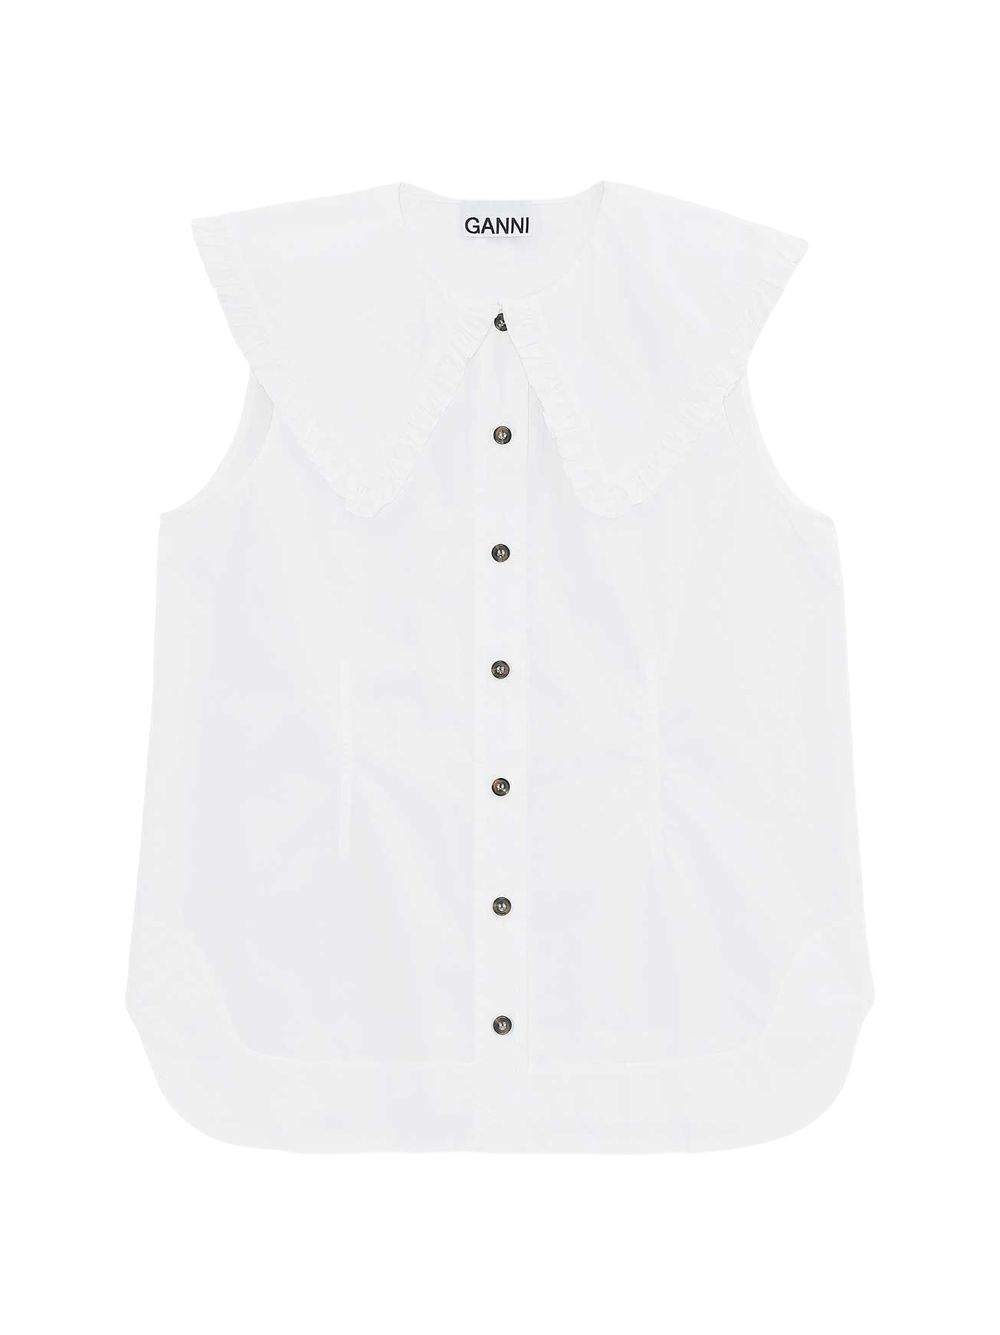 Ganni Sleeveless Shirt in Bright White